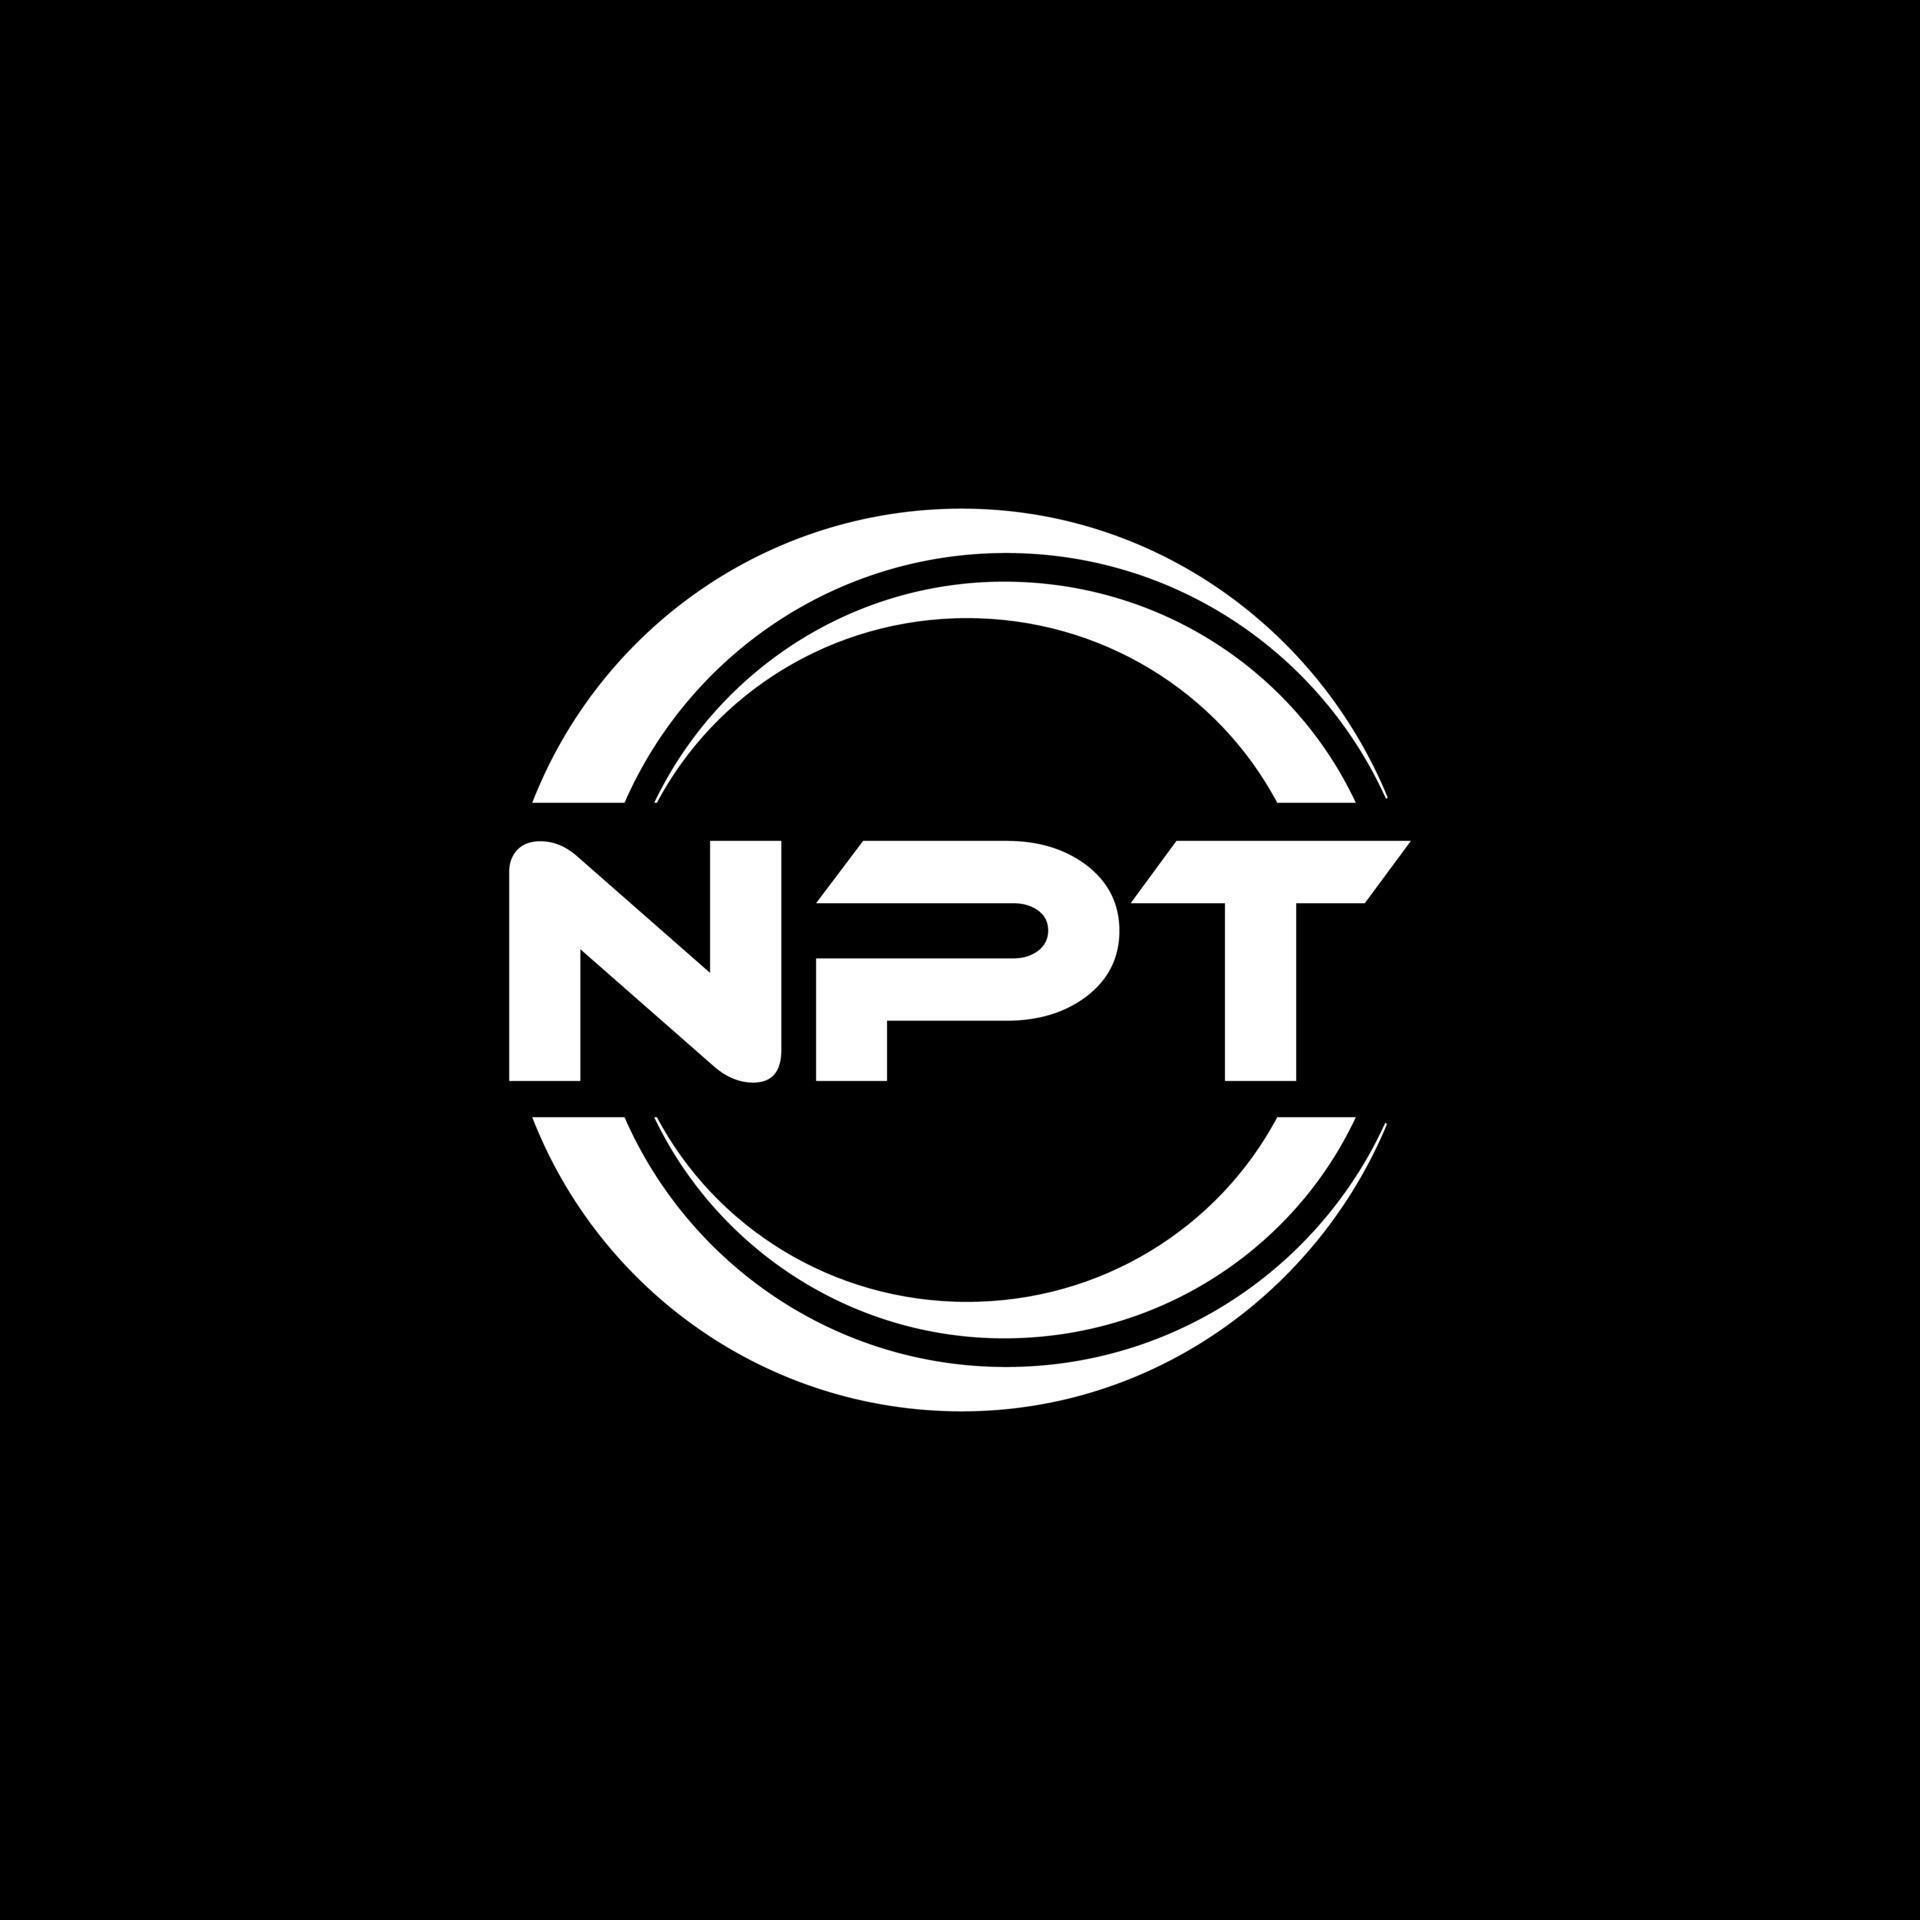 NPT letter logo design in illustration. Vector logo, calligraphy ...